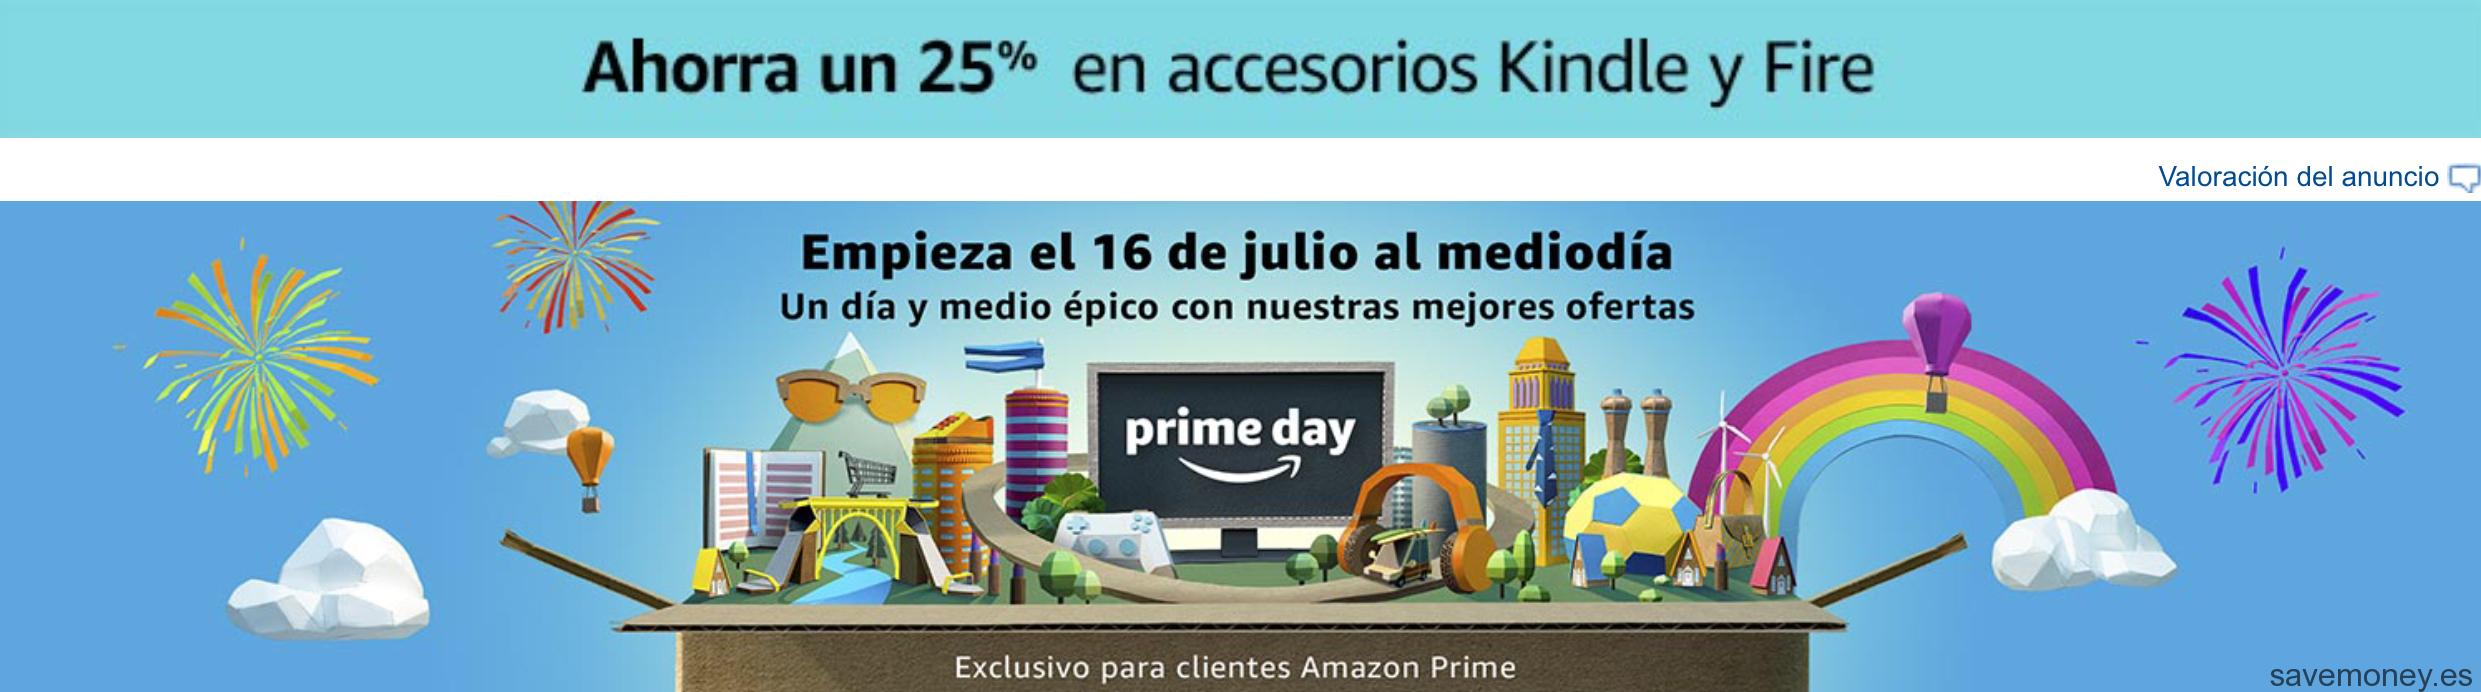 Prime Day 2018: 25% Descuento Accesorios Kindle y Fire